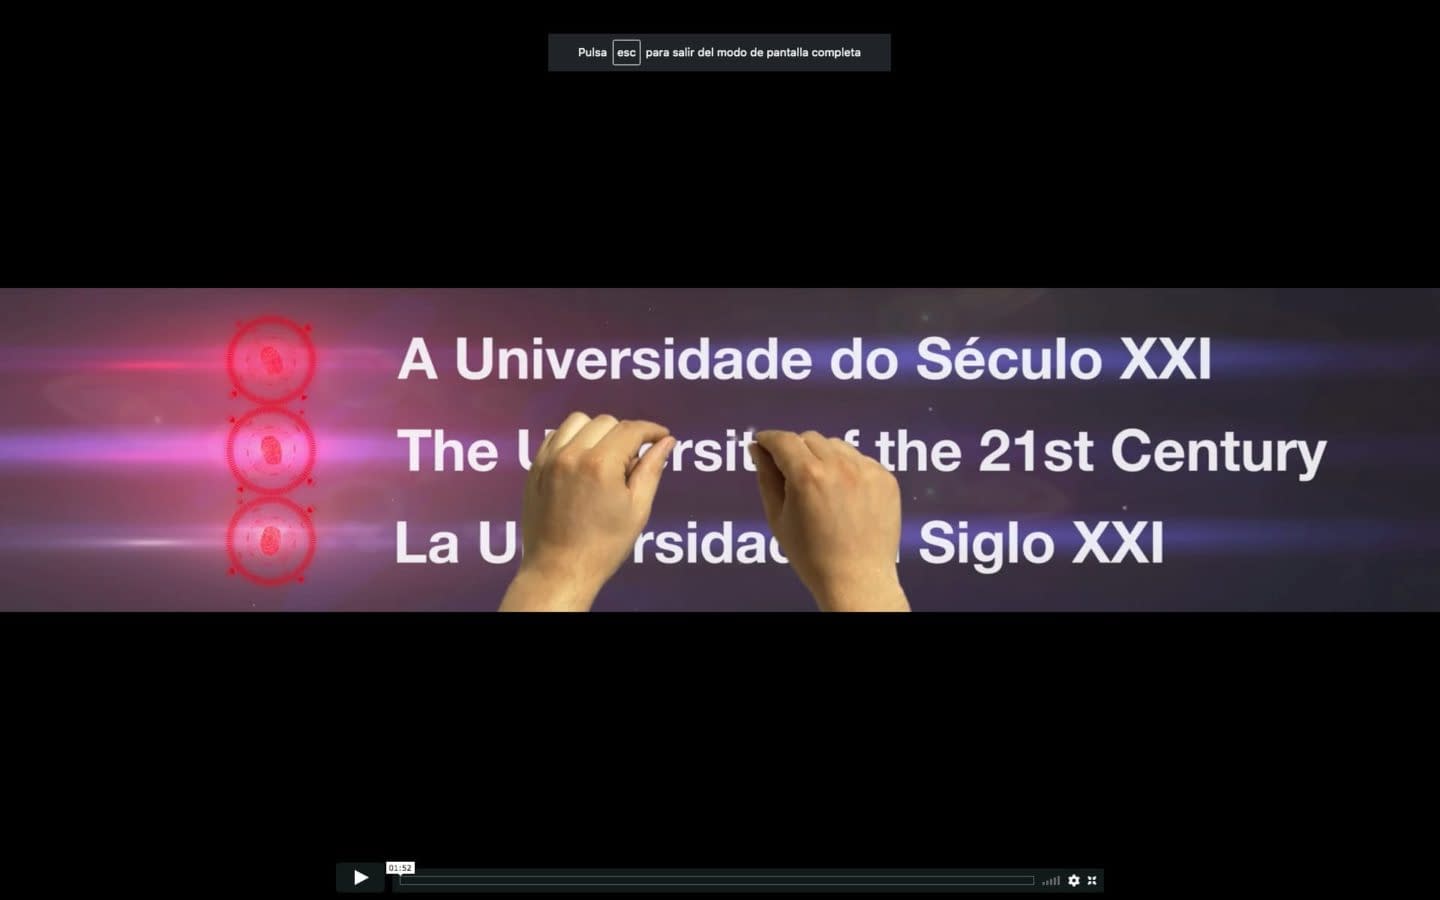 Encuentro Mundial de Rectores de Rio de Janeiro Banco santander 3D VFX COMPOSITION DIRECCION VISUAL LOOP